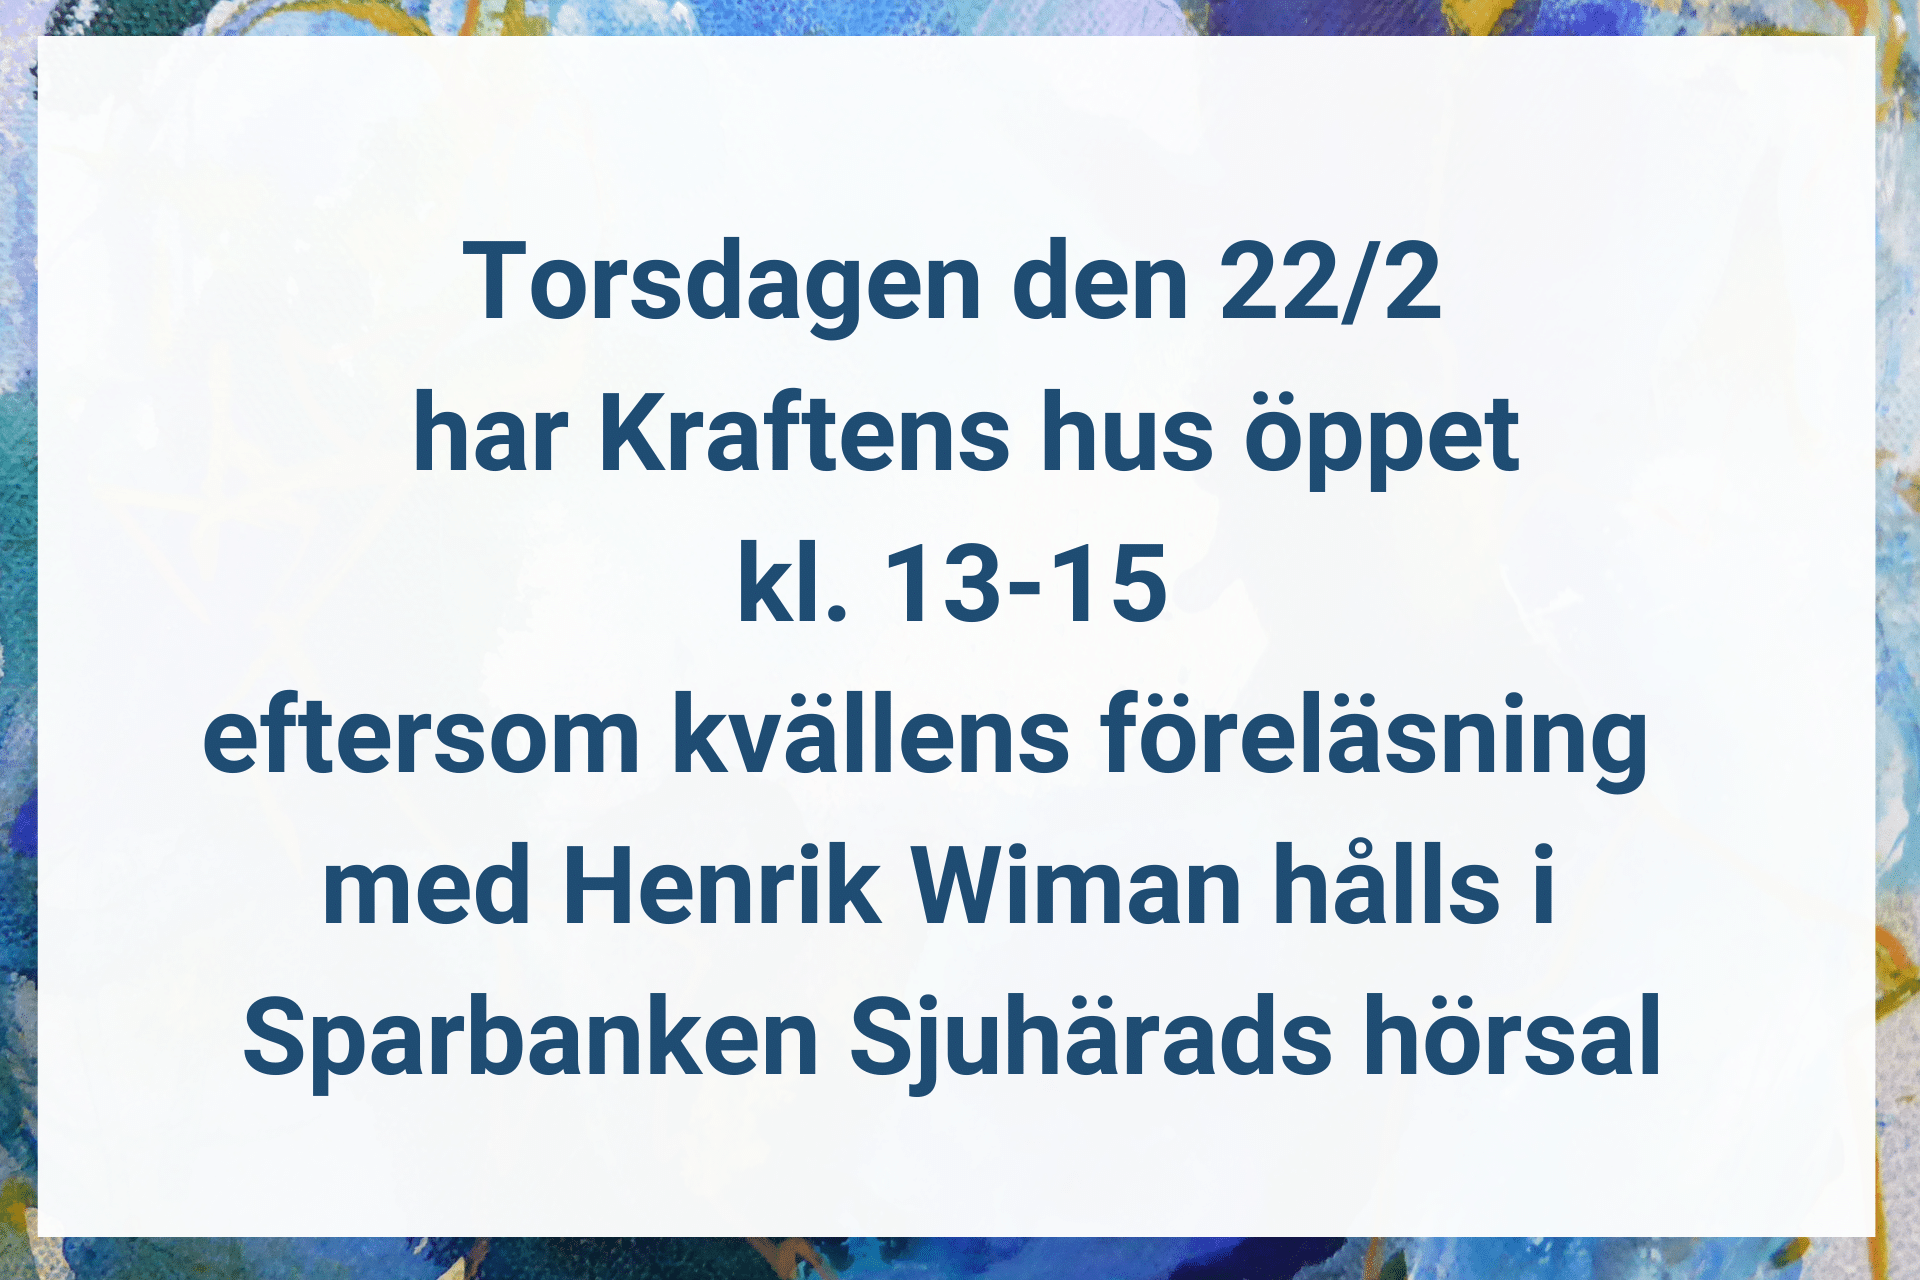 Idag har Kraftens hus Sjuhärad ändrade öppettider eftersom föreläsningen med Henrik Wiman är i Sparbanken Sjuhärads hörsal. Idag torsdag 22/2 2024 har vi öppet kl. 13-15.